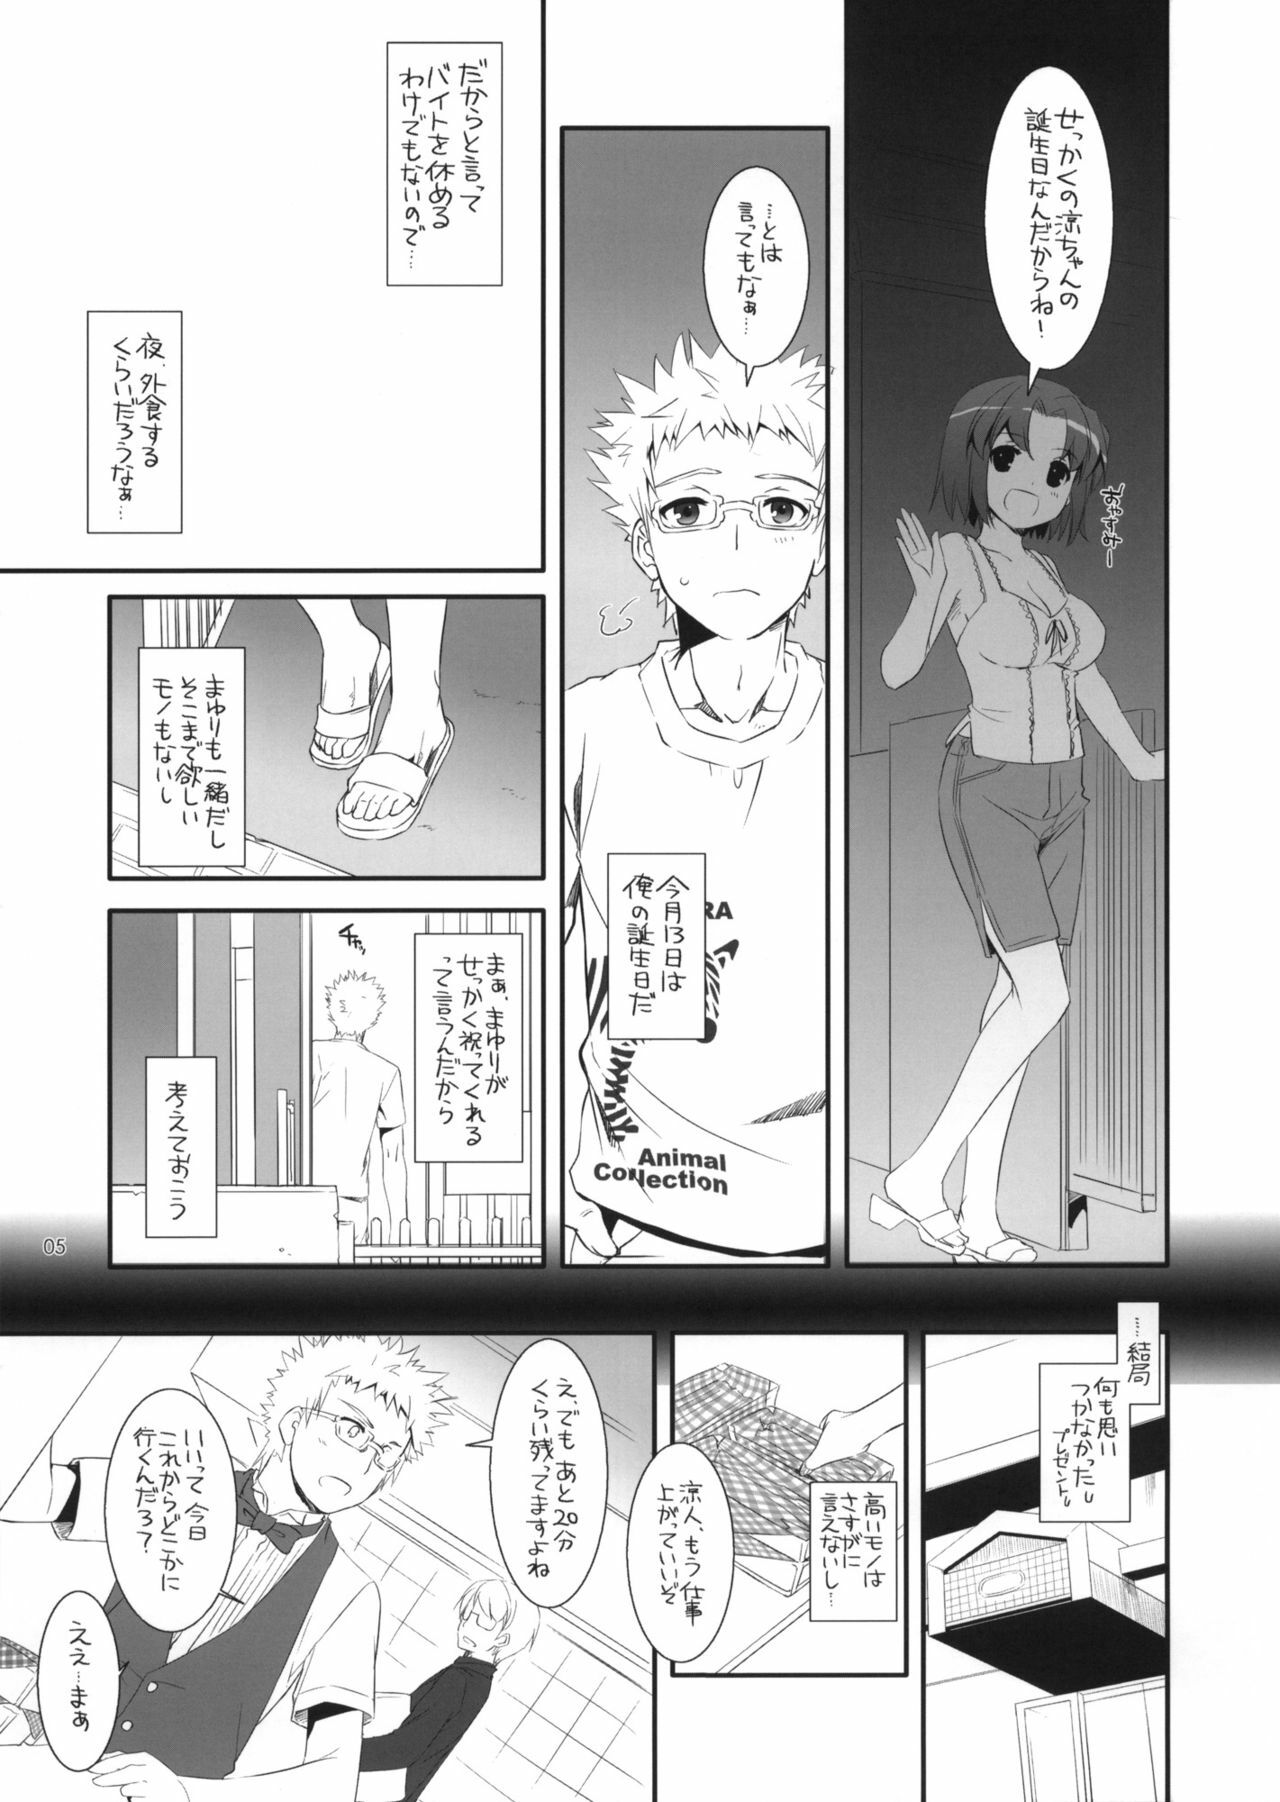 (COMITIA100) [Digital Lover (Nakajima Yuka)] Seifuku Rakuen 31 Preview Version page 5 full